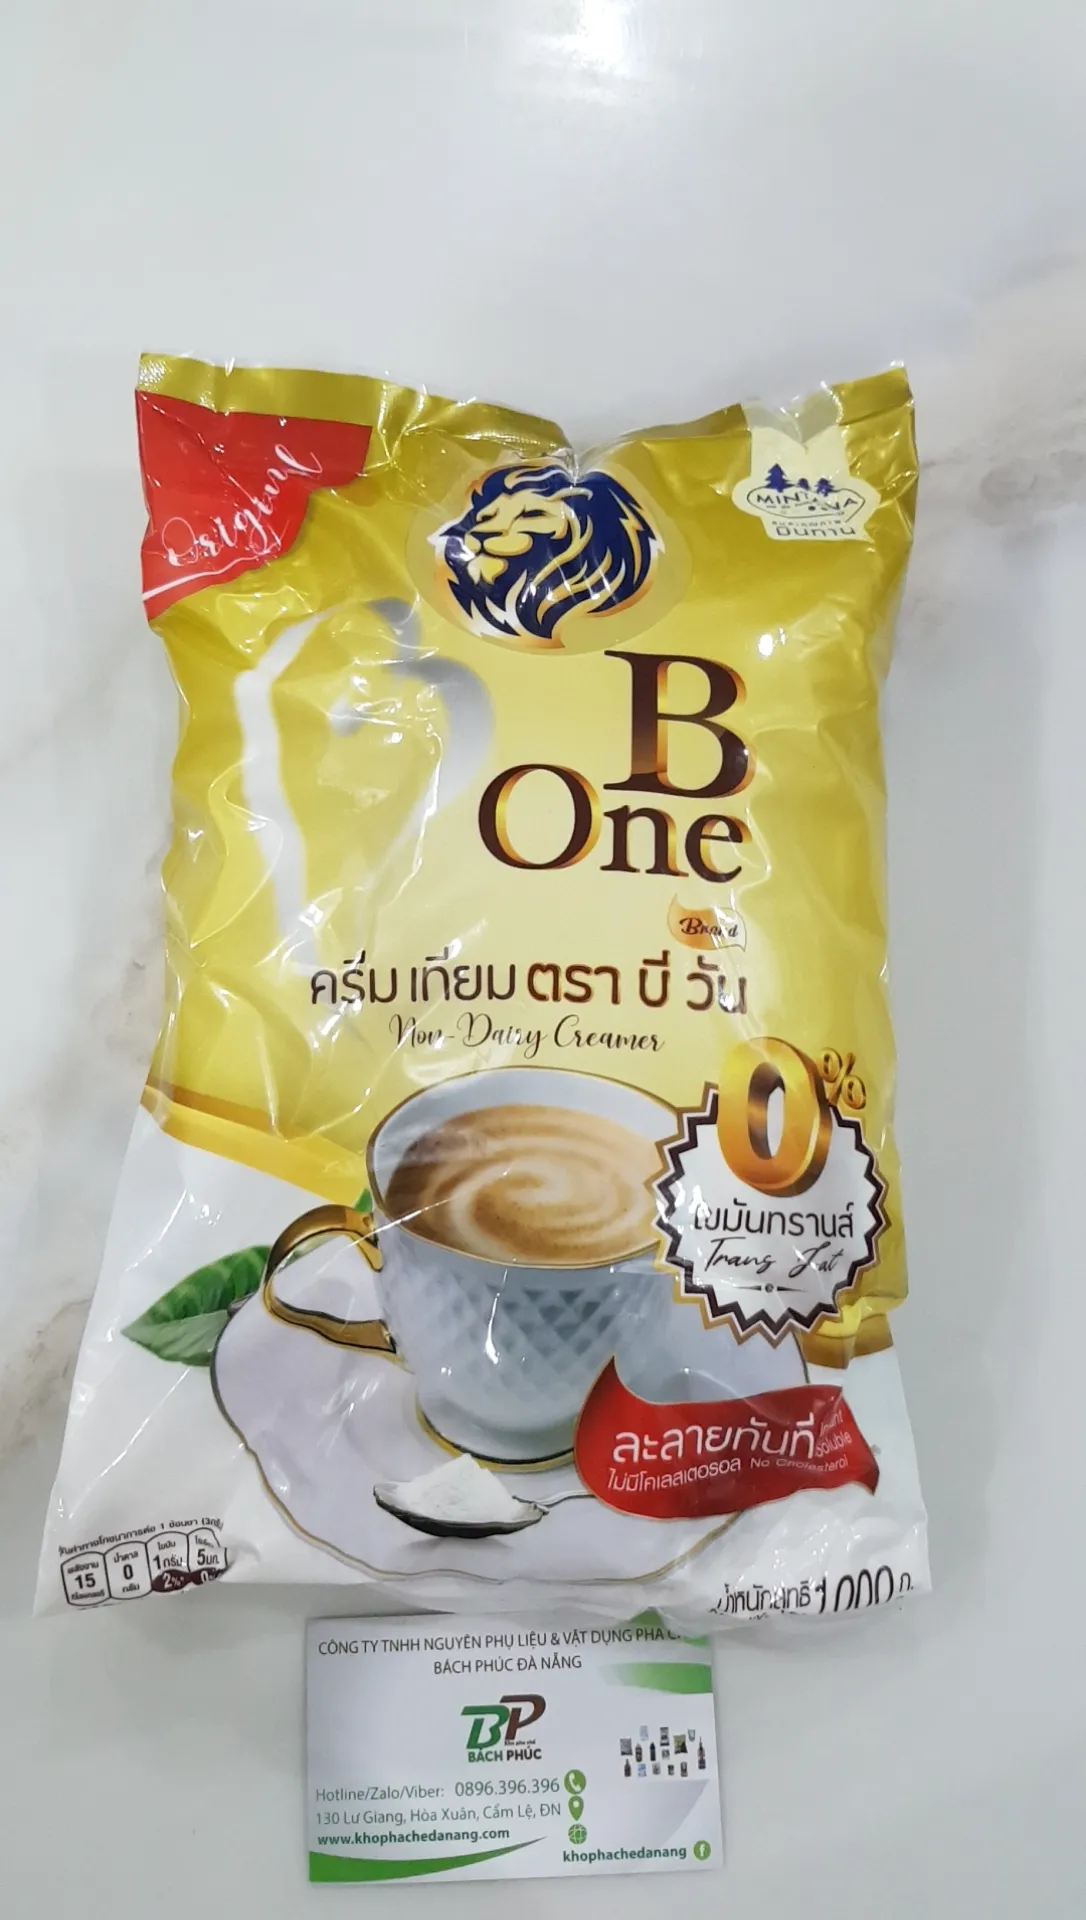 Bột Kem Béo Bone/ B-one Nguyên Liệu Trà Sữa Đà Nẵng